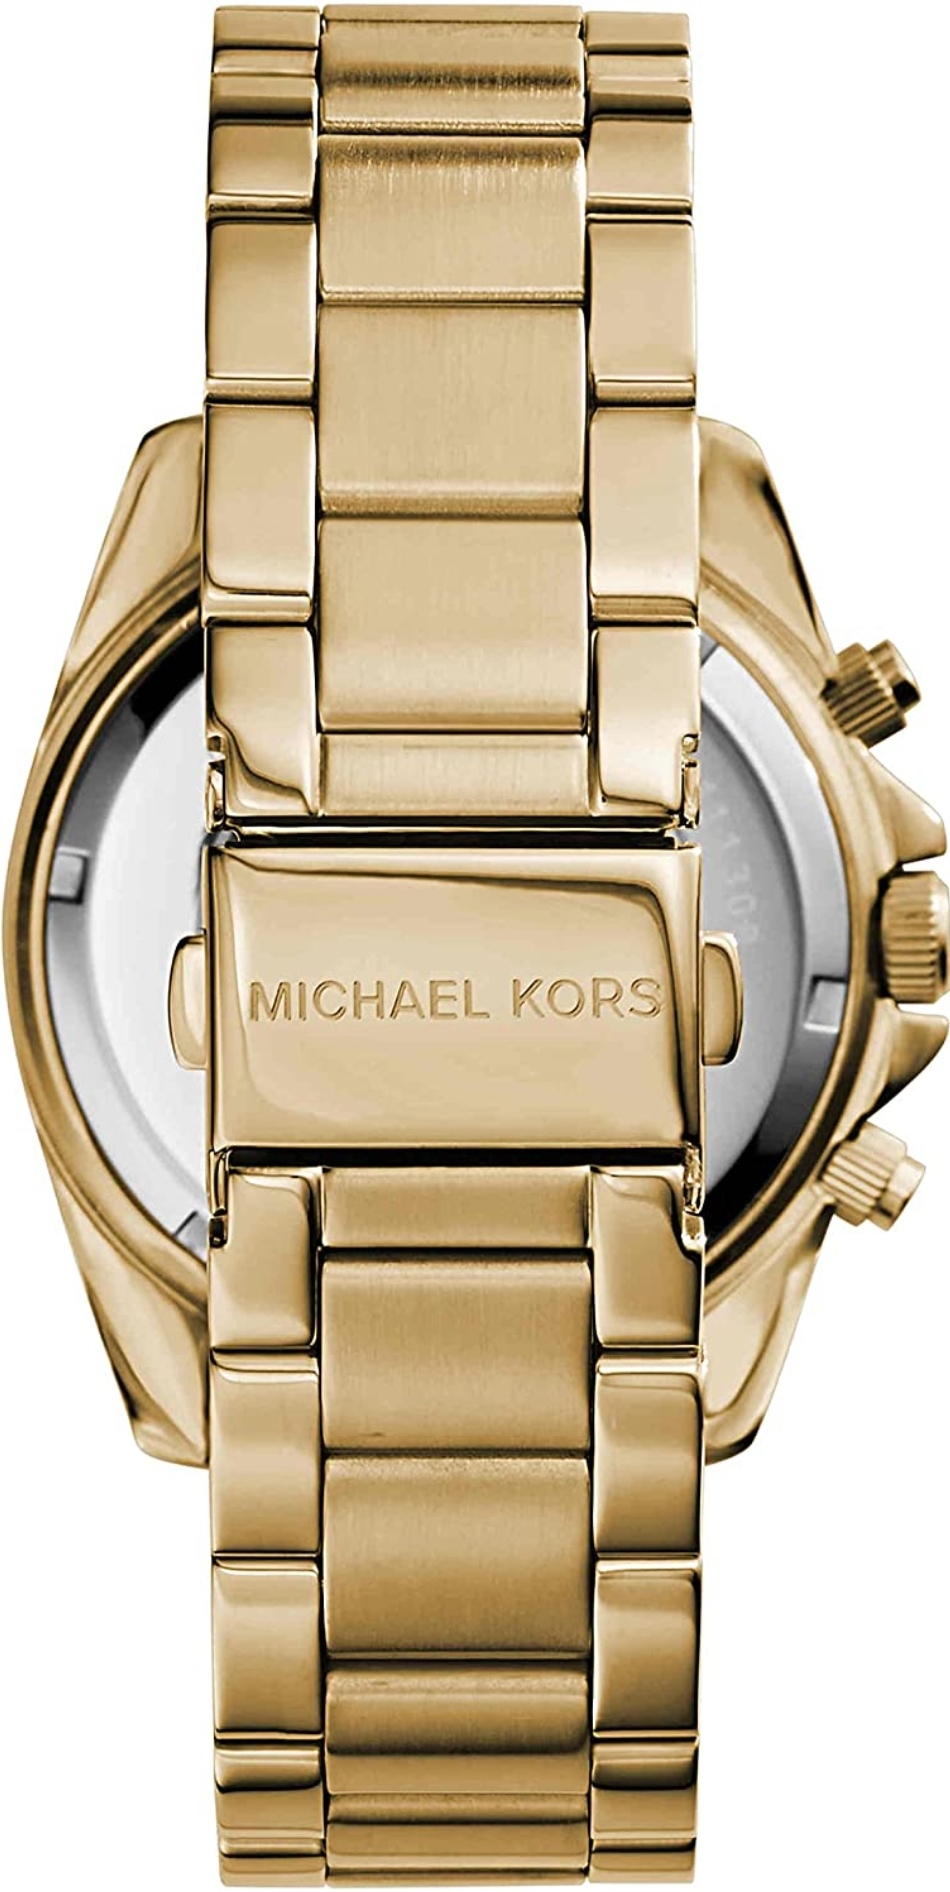 Michael Kors MK5166 Ladies Blair Watch - Image 7 of 10